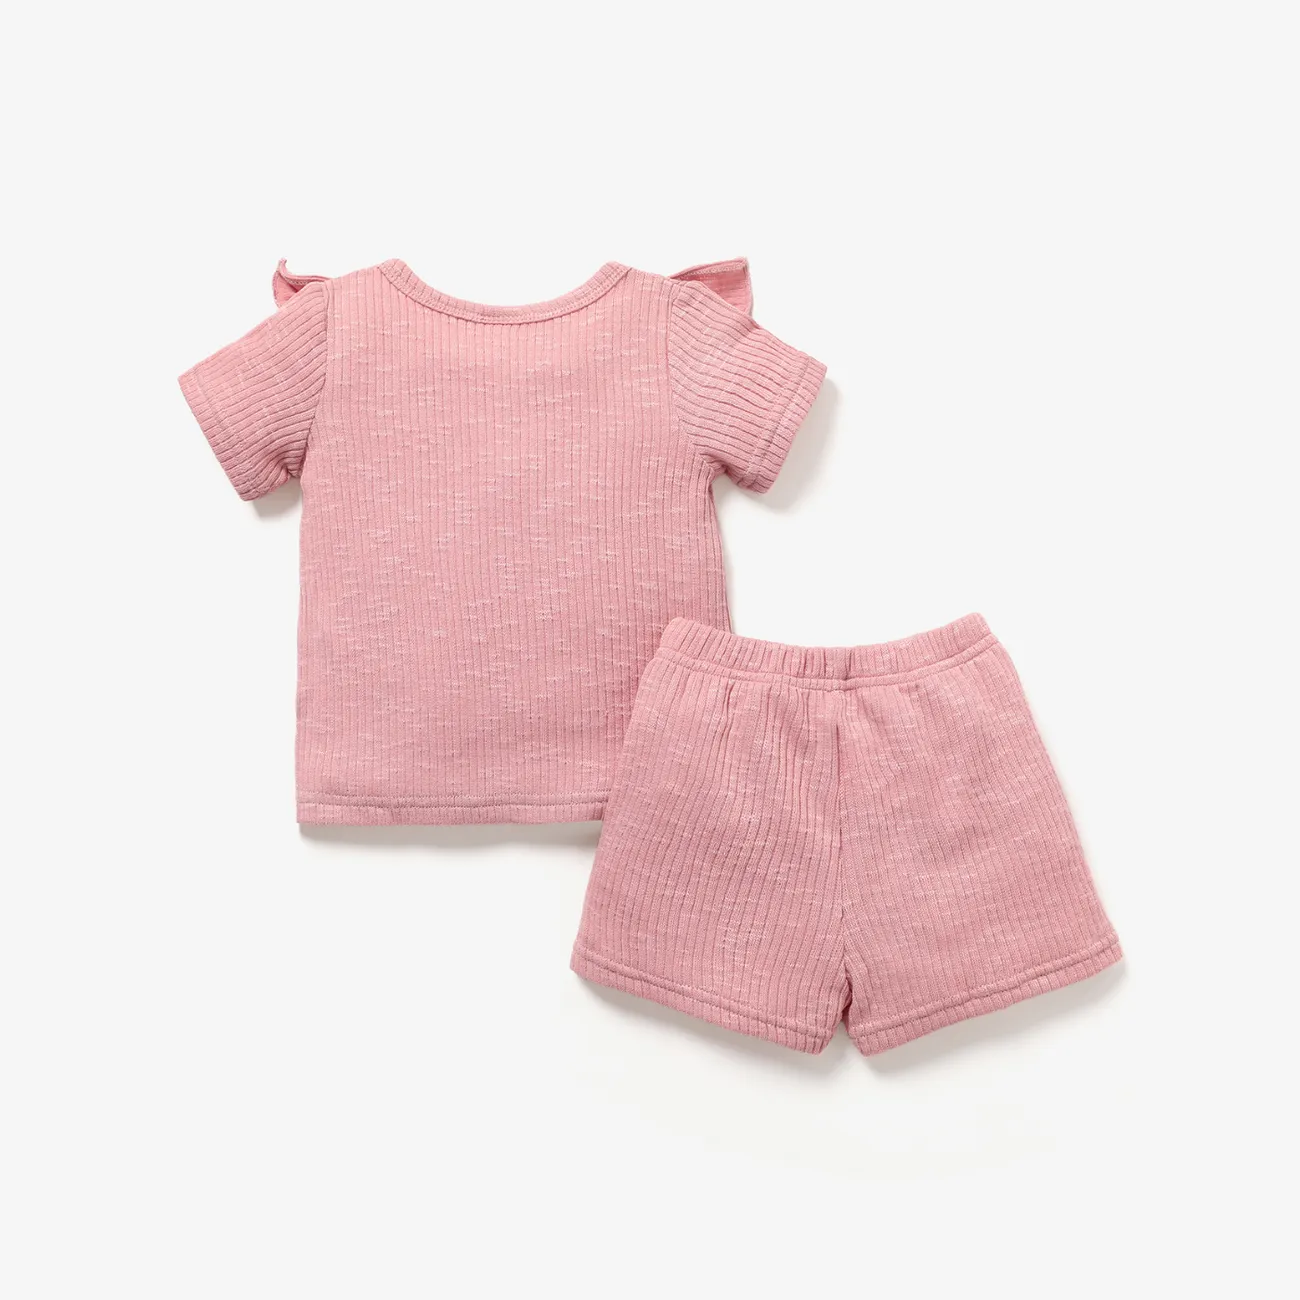 2pcs Baby Girl Solid Ribbed Ruffle Trim Short-sleeve Top & Shorts Set Pink big image 1